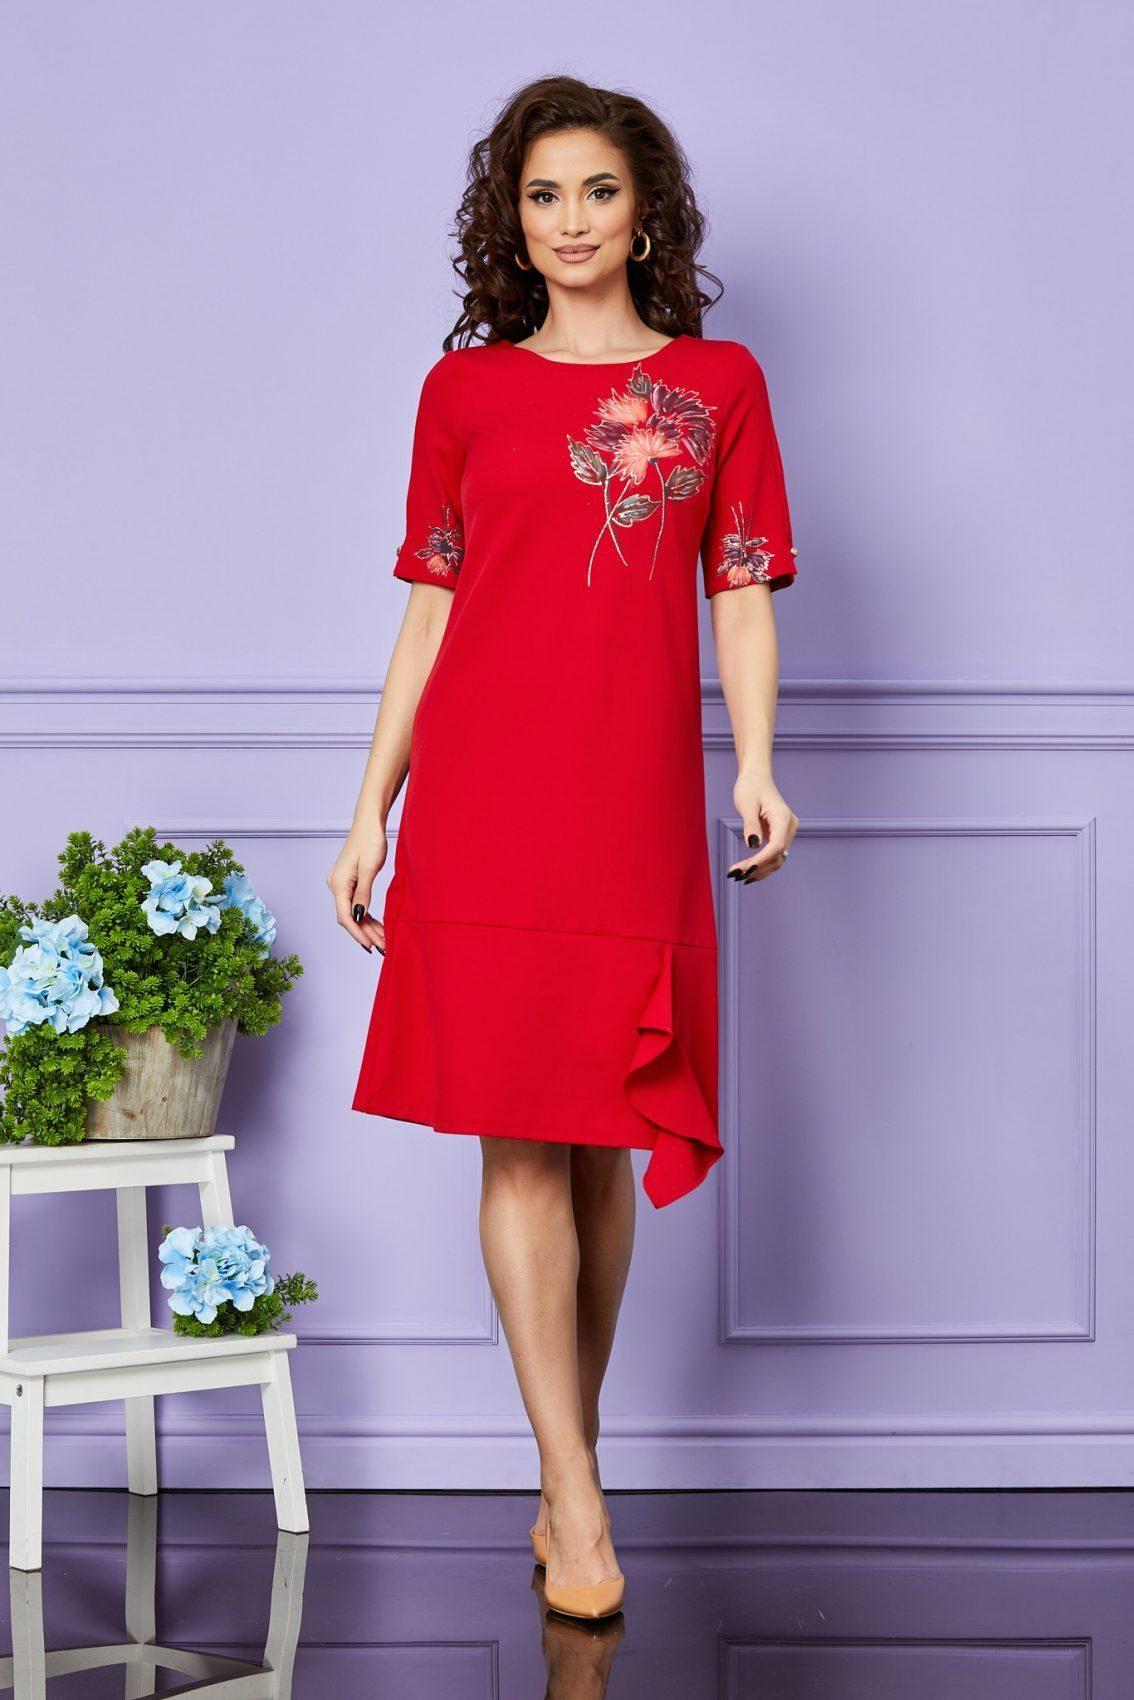 Κόκκινο Φόρεμα Σε Γραμμή Άλφα Ilanna T2534 1